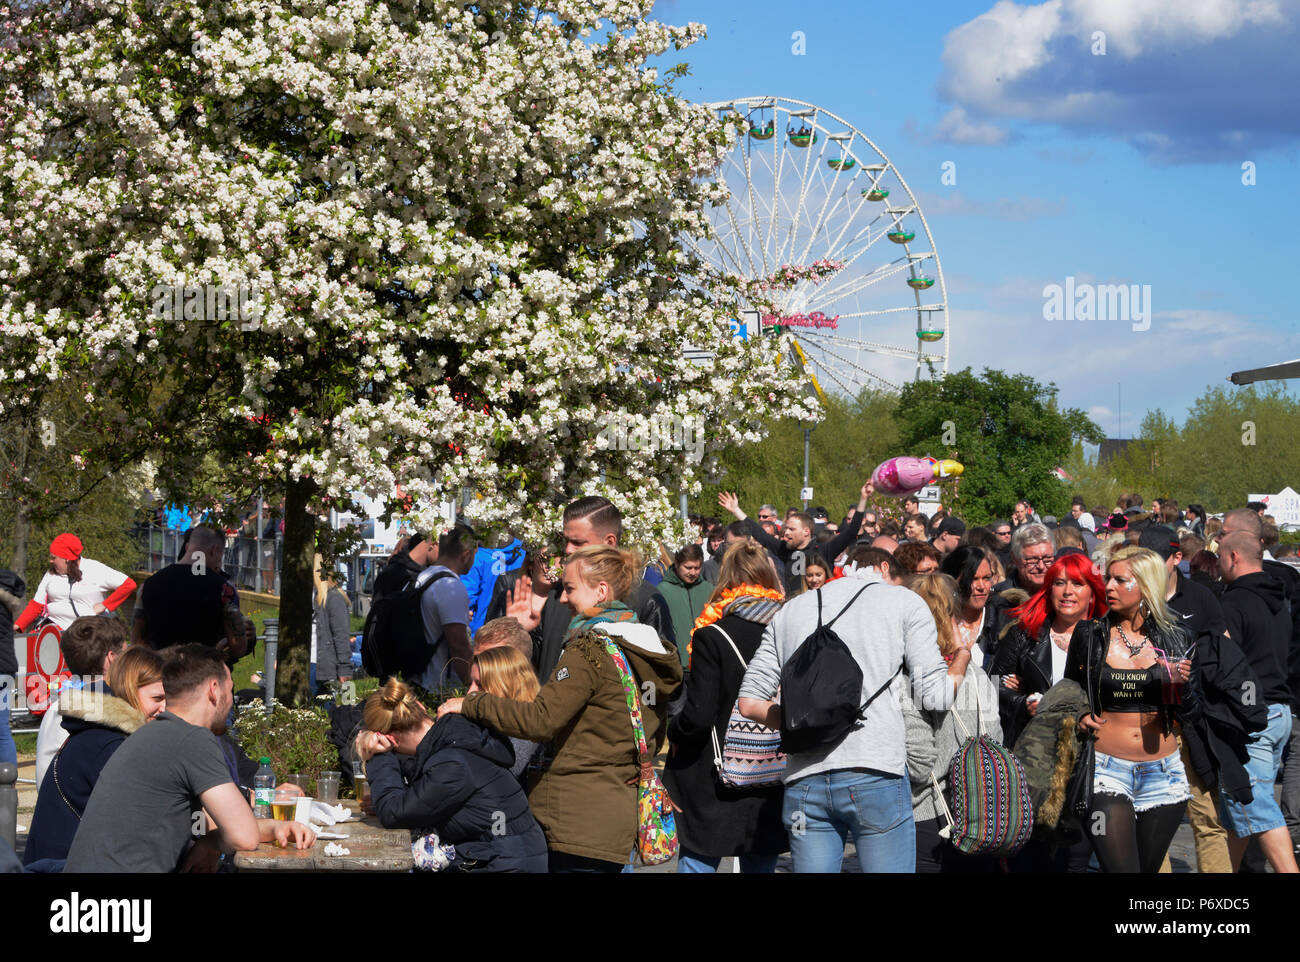 Besucher, Baumbluetenfest, Werder, Havel, Brandenburg, Deutschland, Baumblütenfest Stock Photo